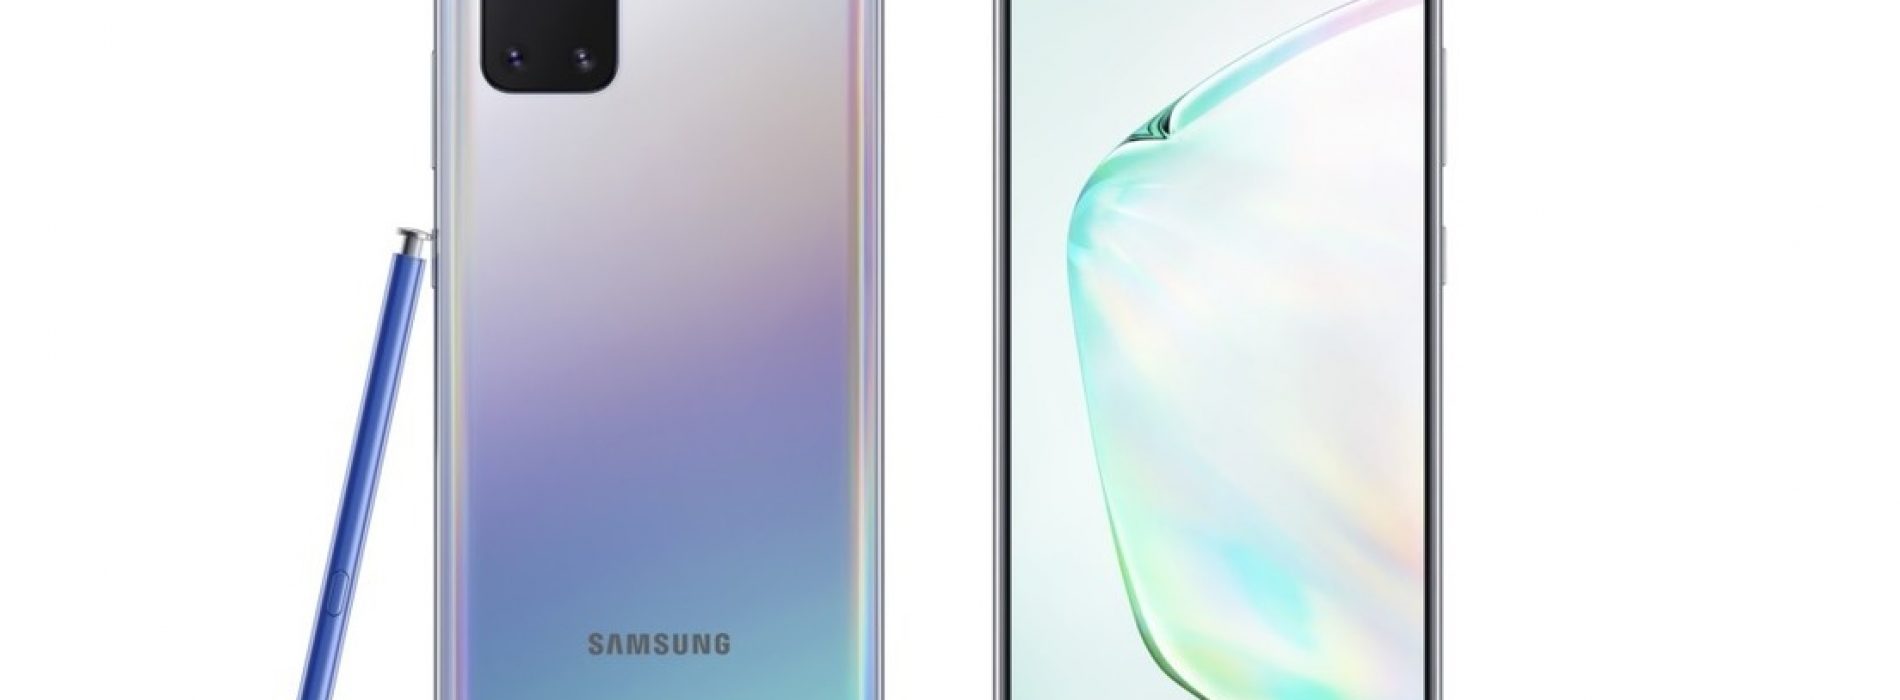 Samsung anuncia dos nuevos ‘smartphones’ muy parecidos a sus mejores modelos pero más baratos